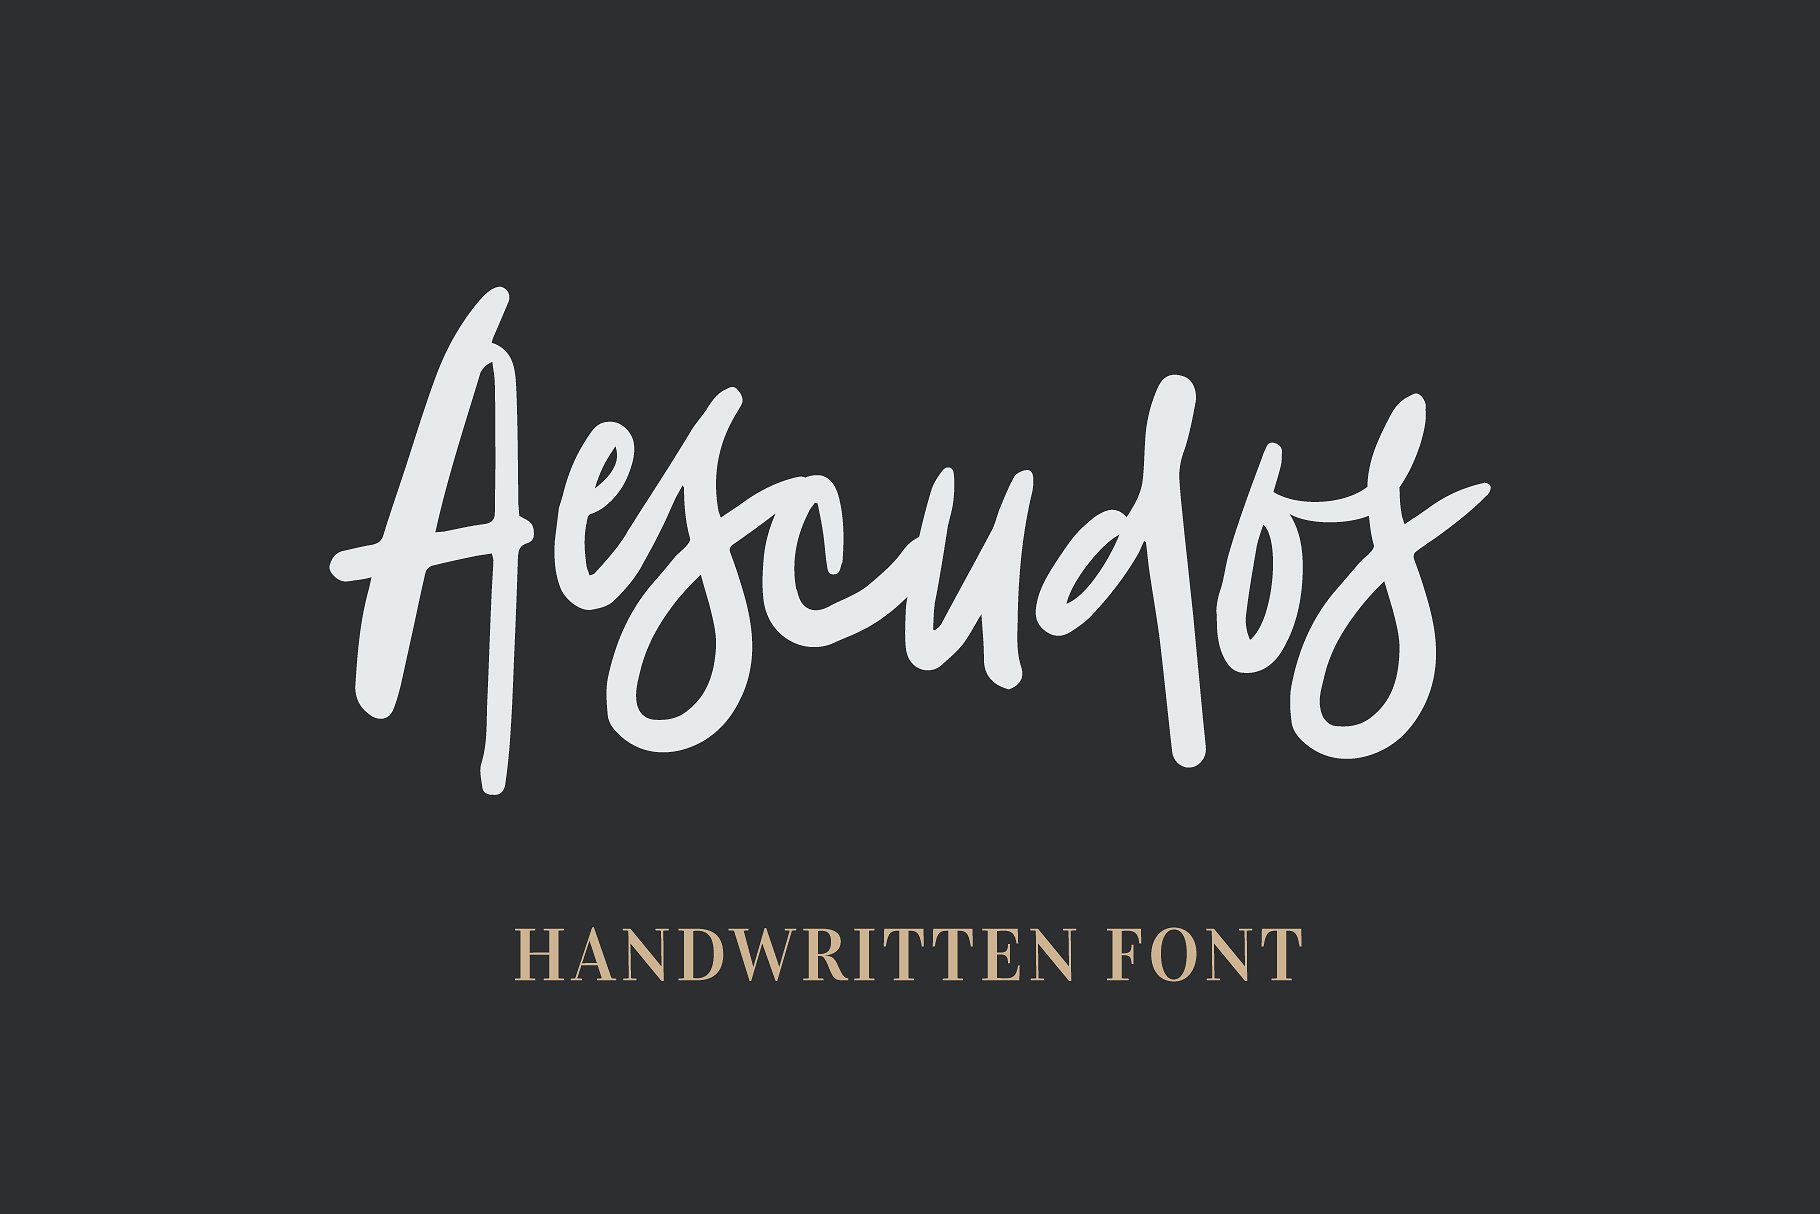 一款可爱自然的手写英文字体 Aescudos - Handw